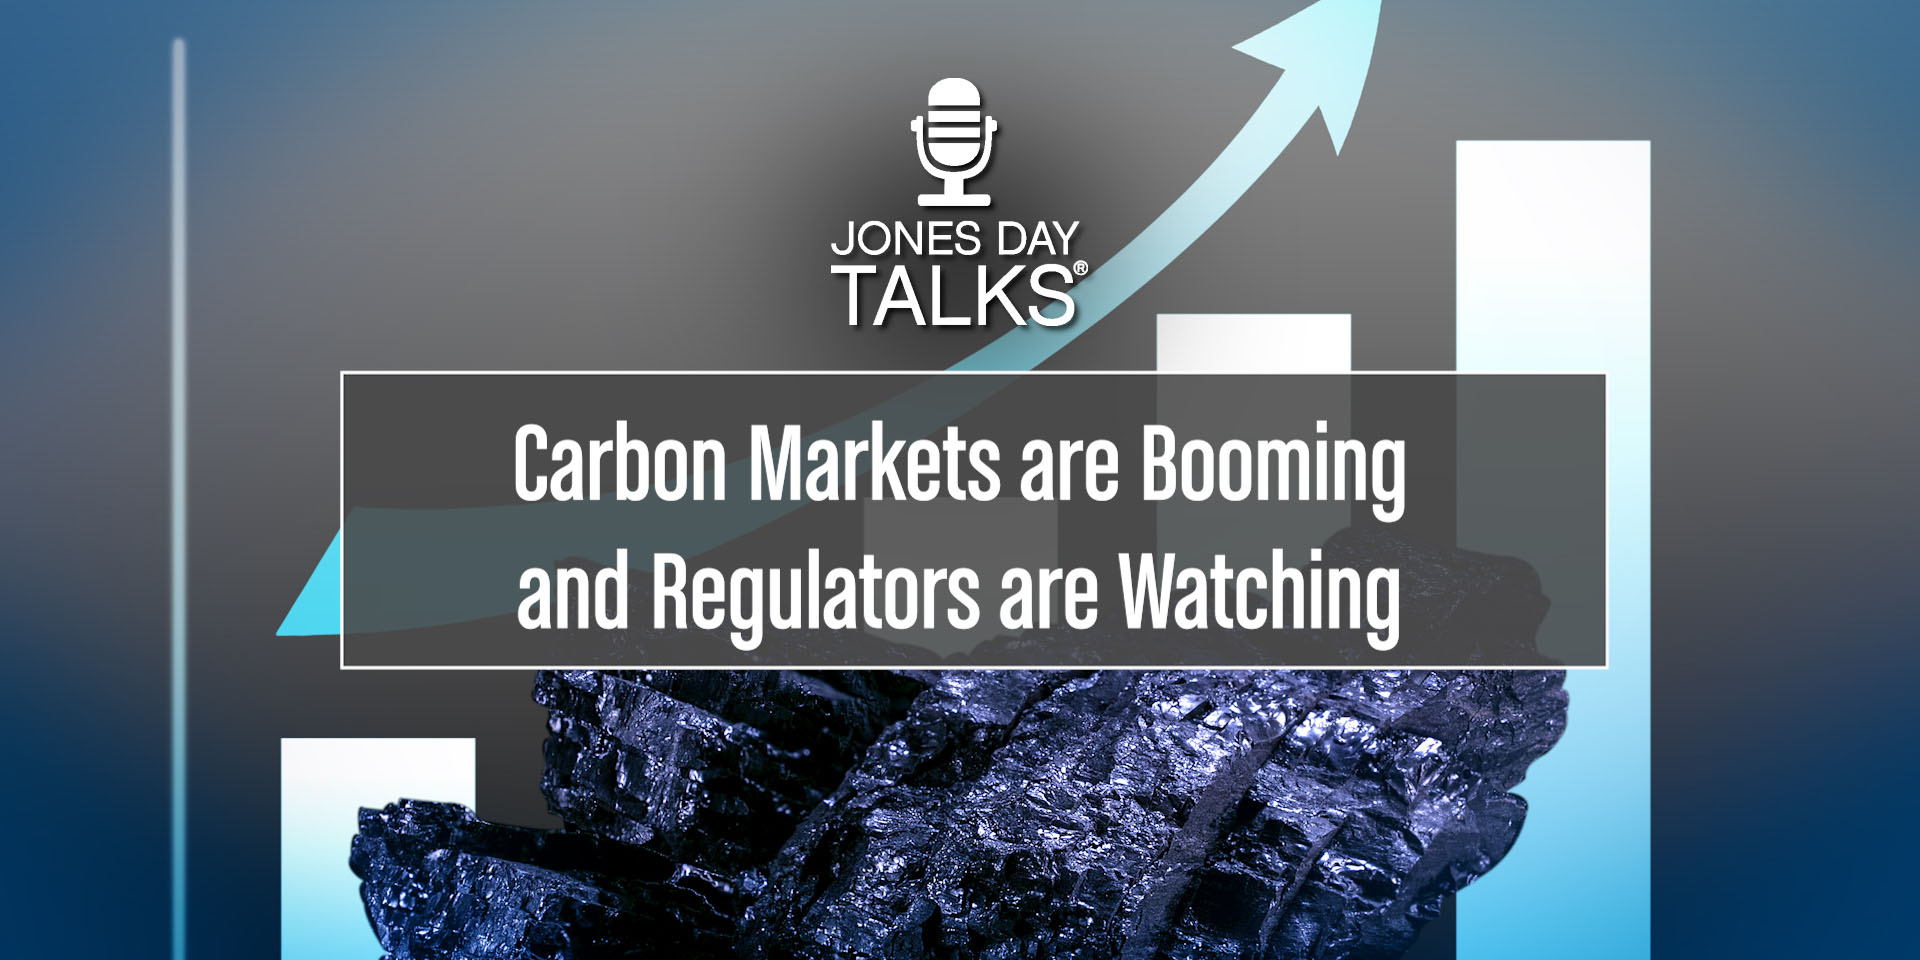 JONES DAY TALKS  Carbon Markets  SOCIAL